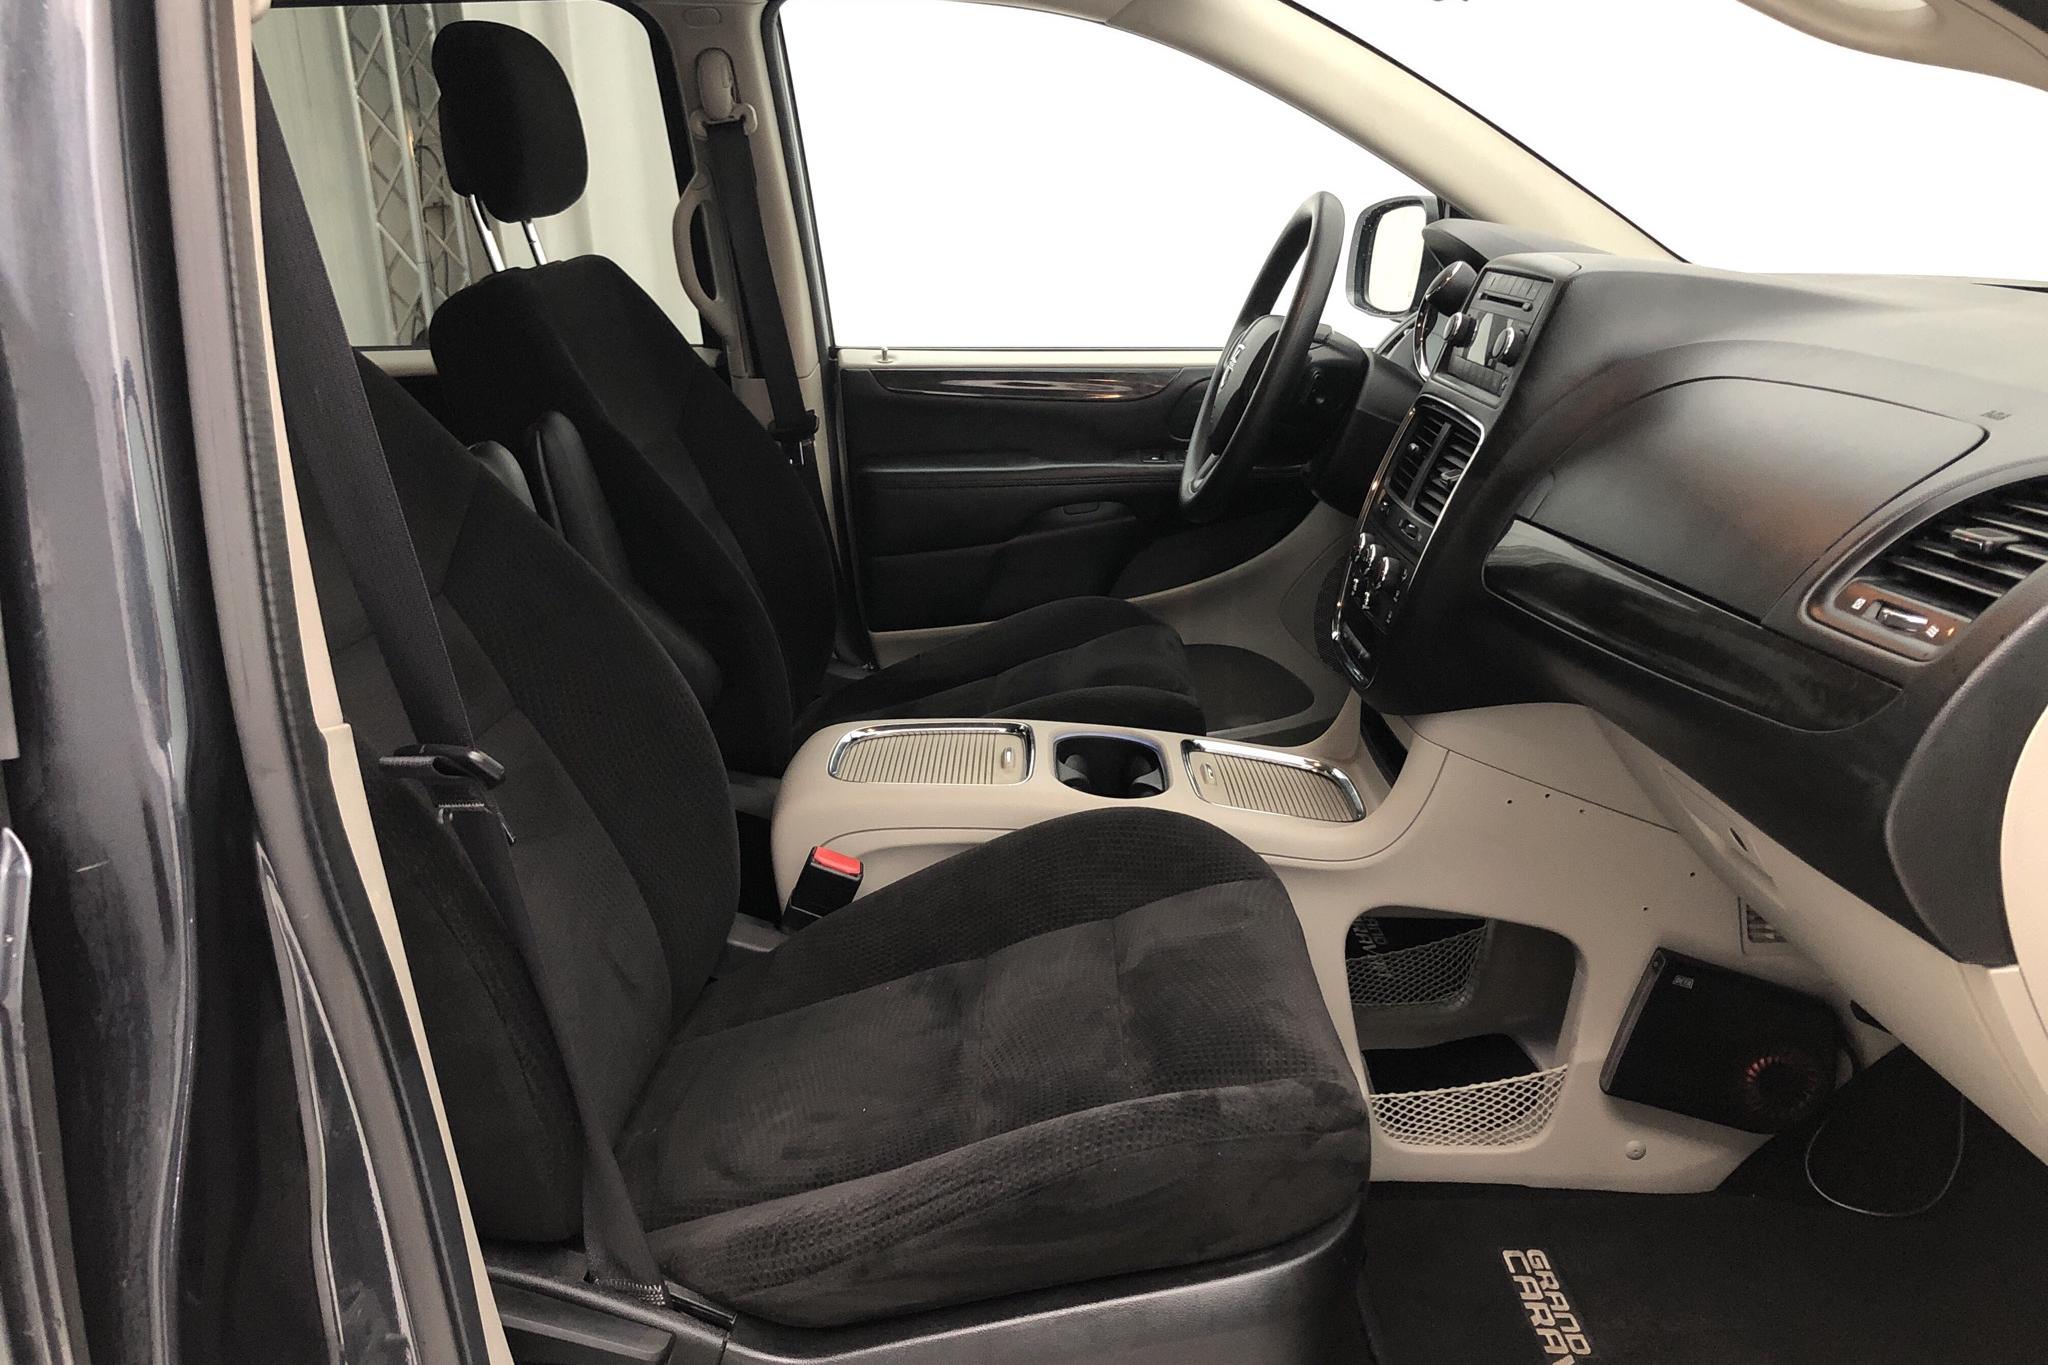 Dodge Grand Caravan SXT Flex Fuel (287hk) - 89 830 km - Automatic - black - 2014